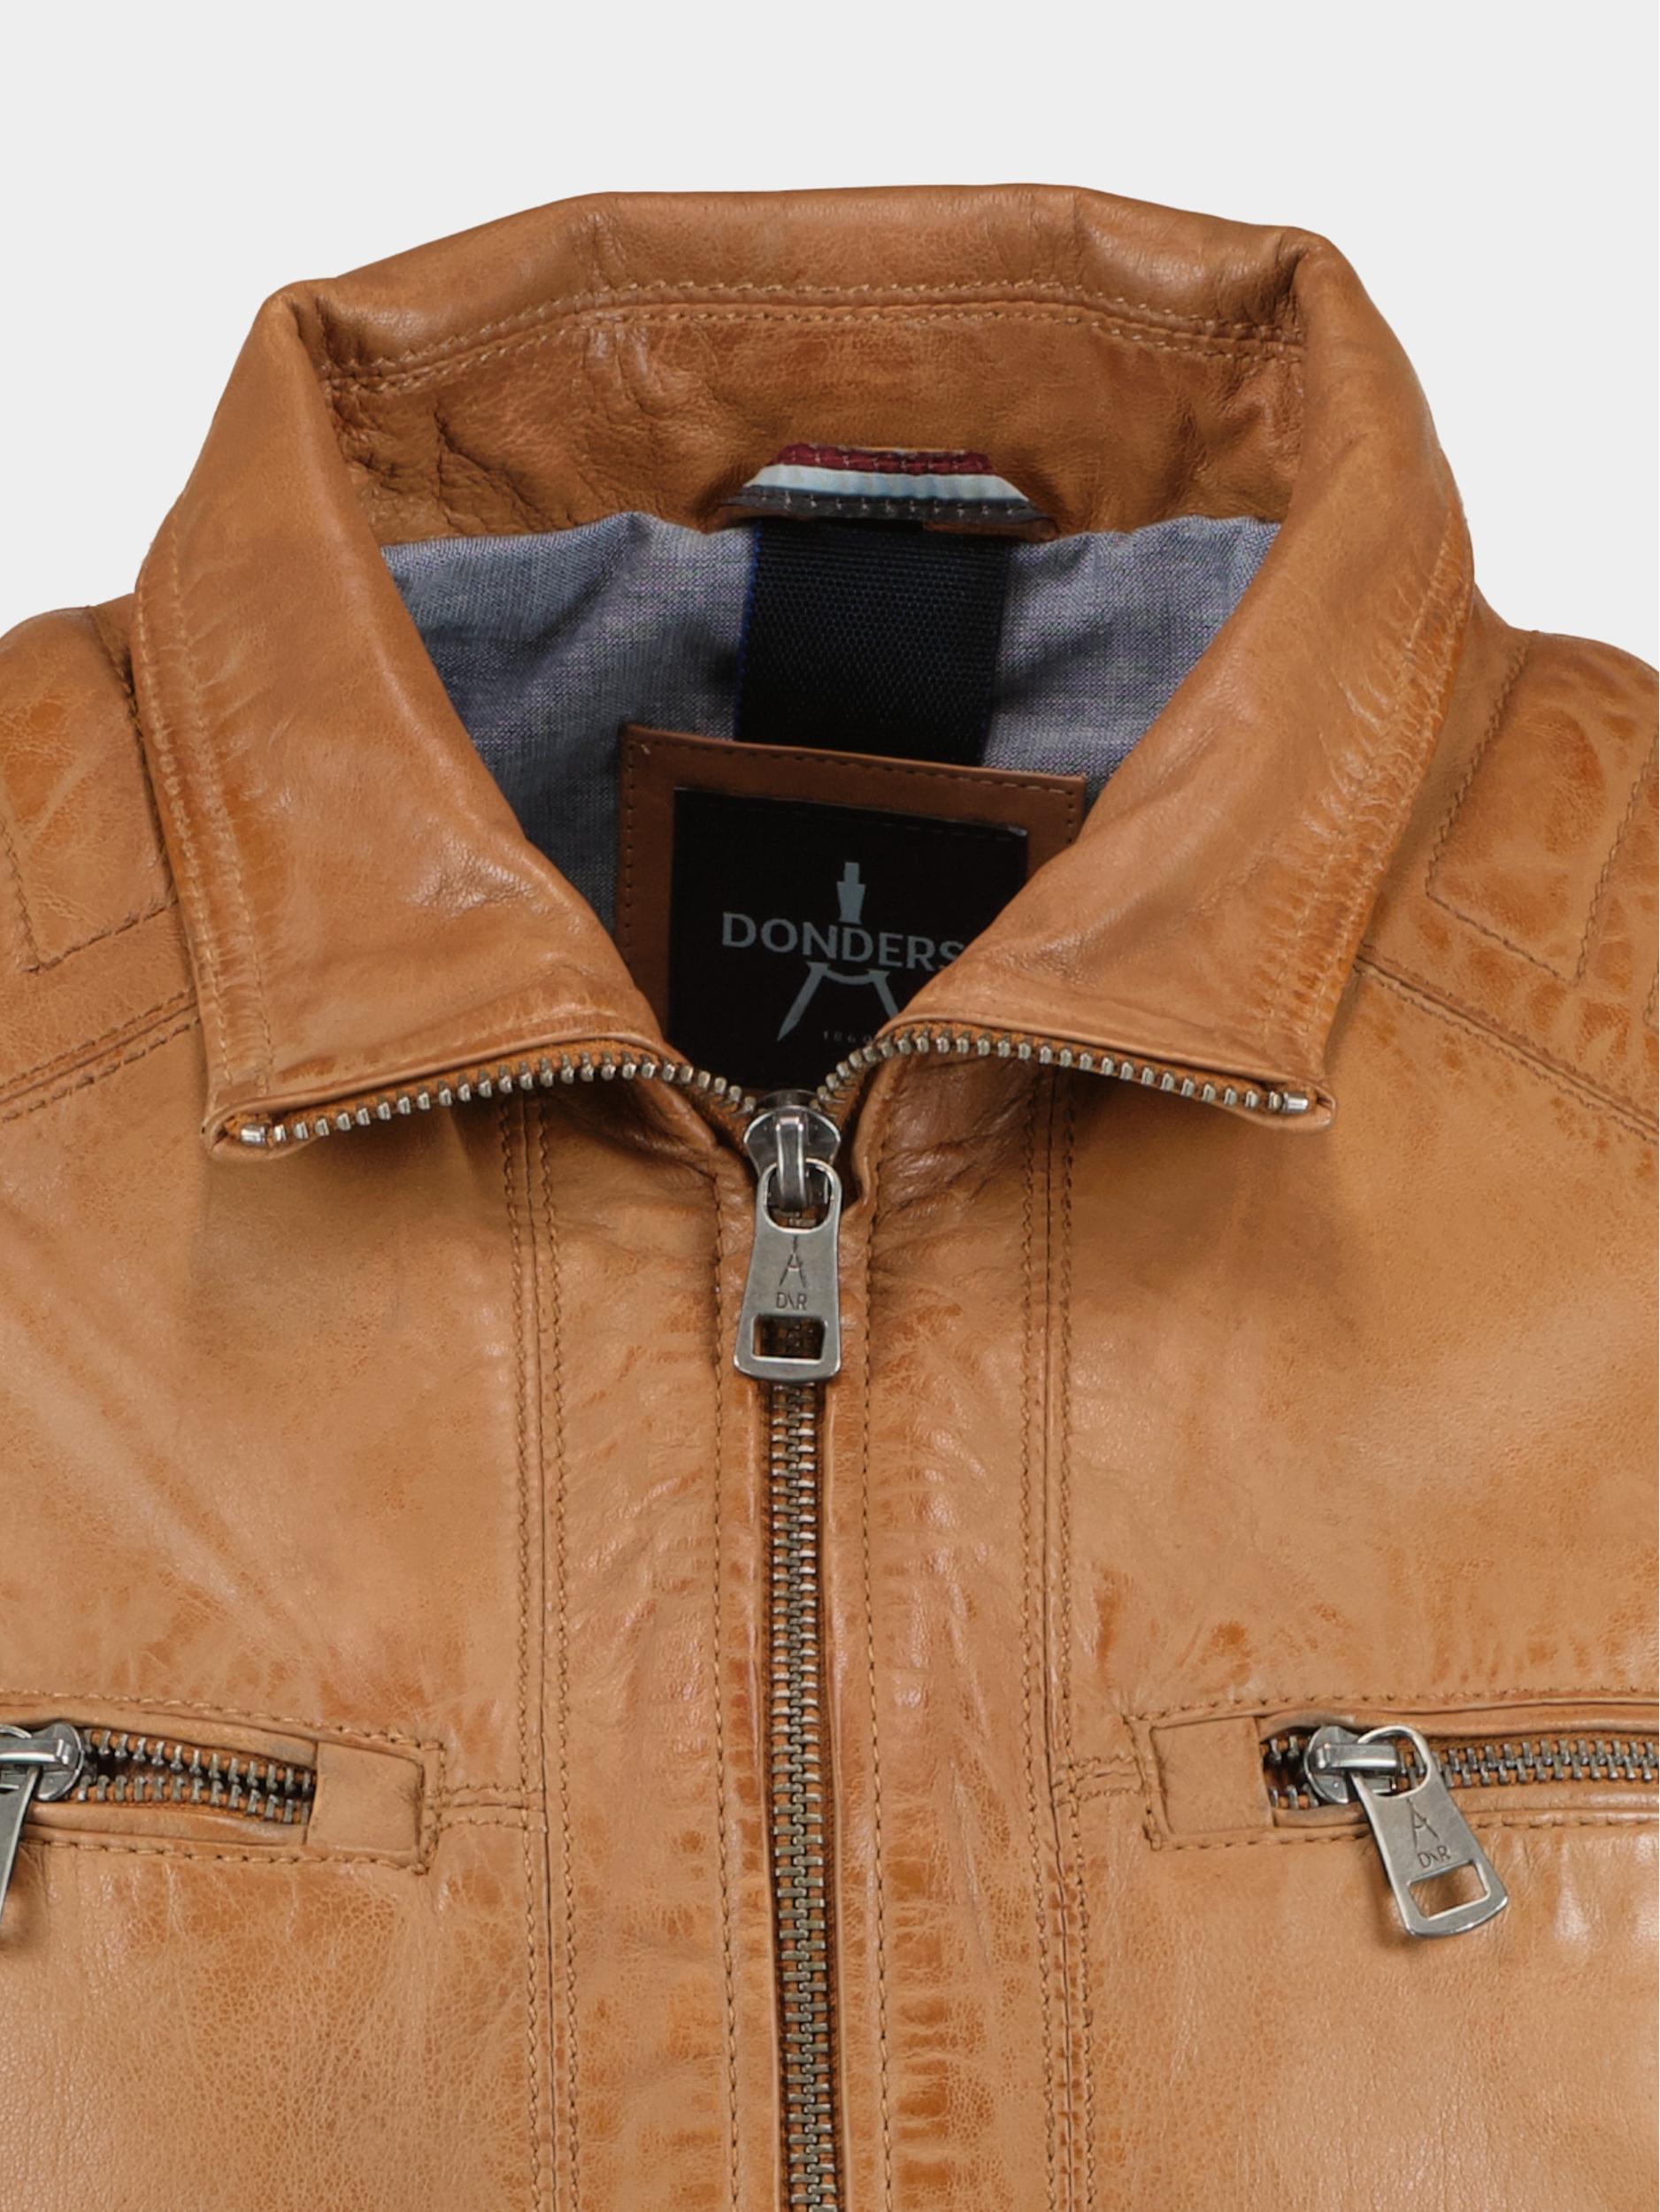 Donders 1860 Lederen jack Bruin Leather Jacket 52347/310